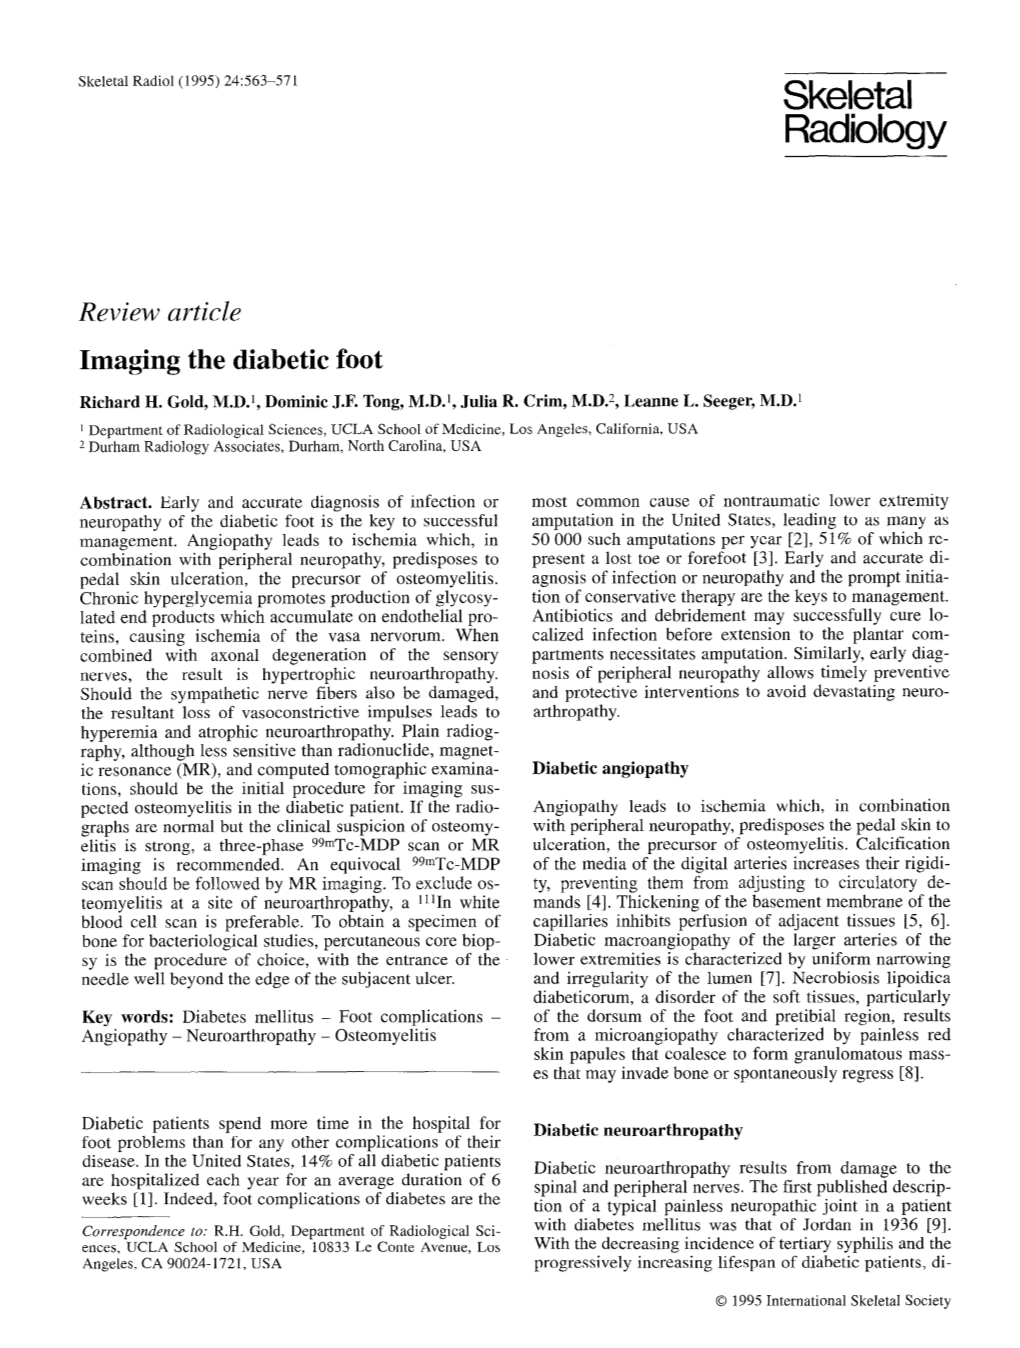 Imaging the Diabetic Foot